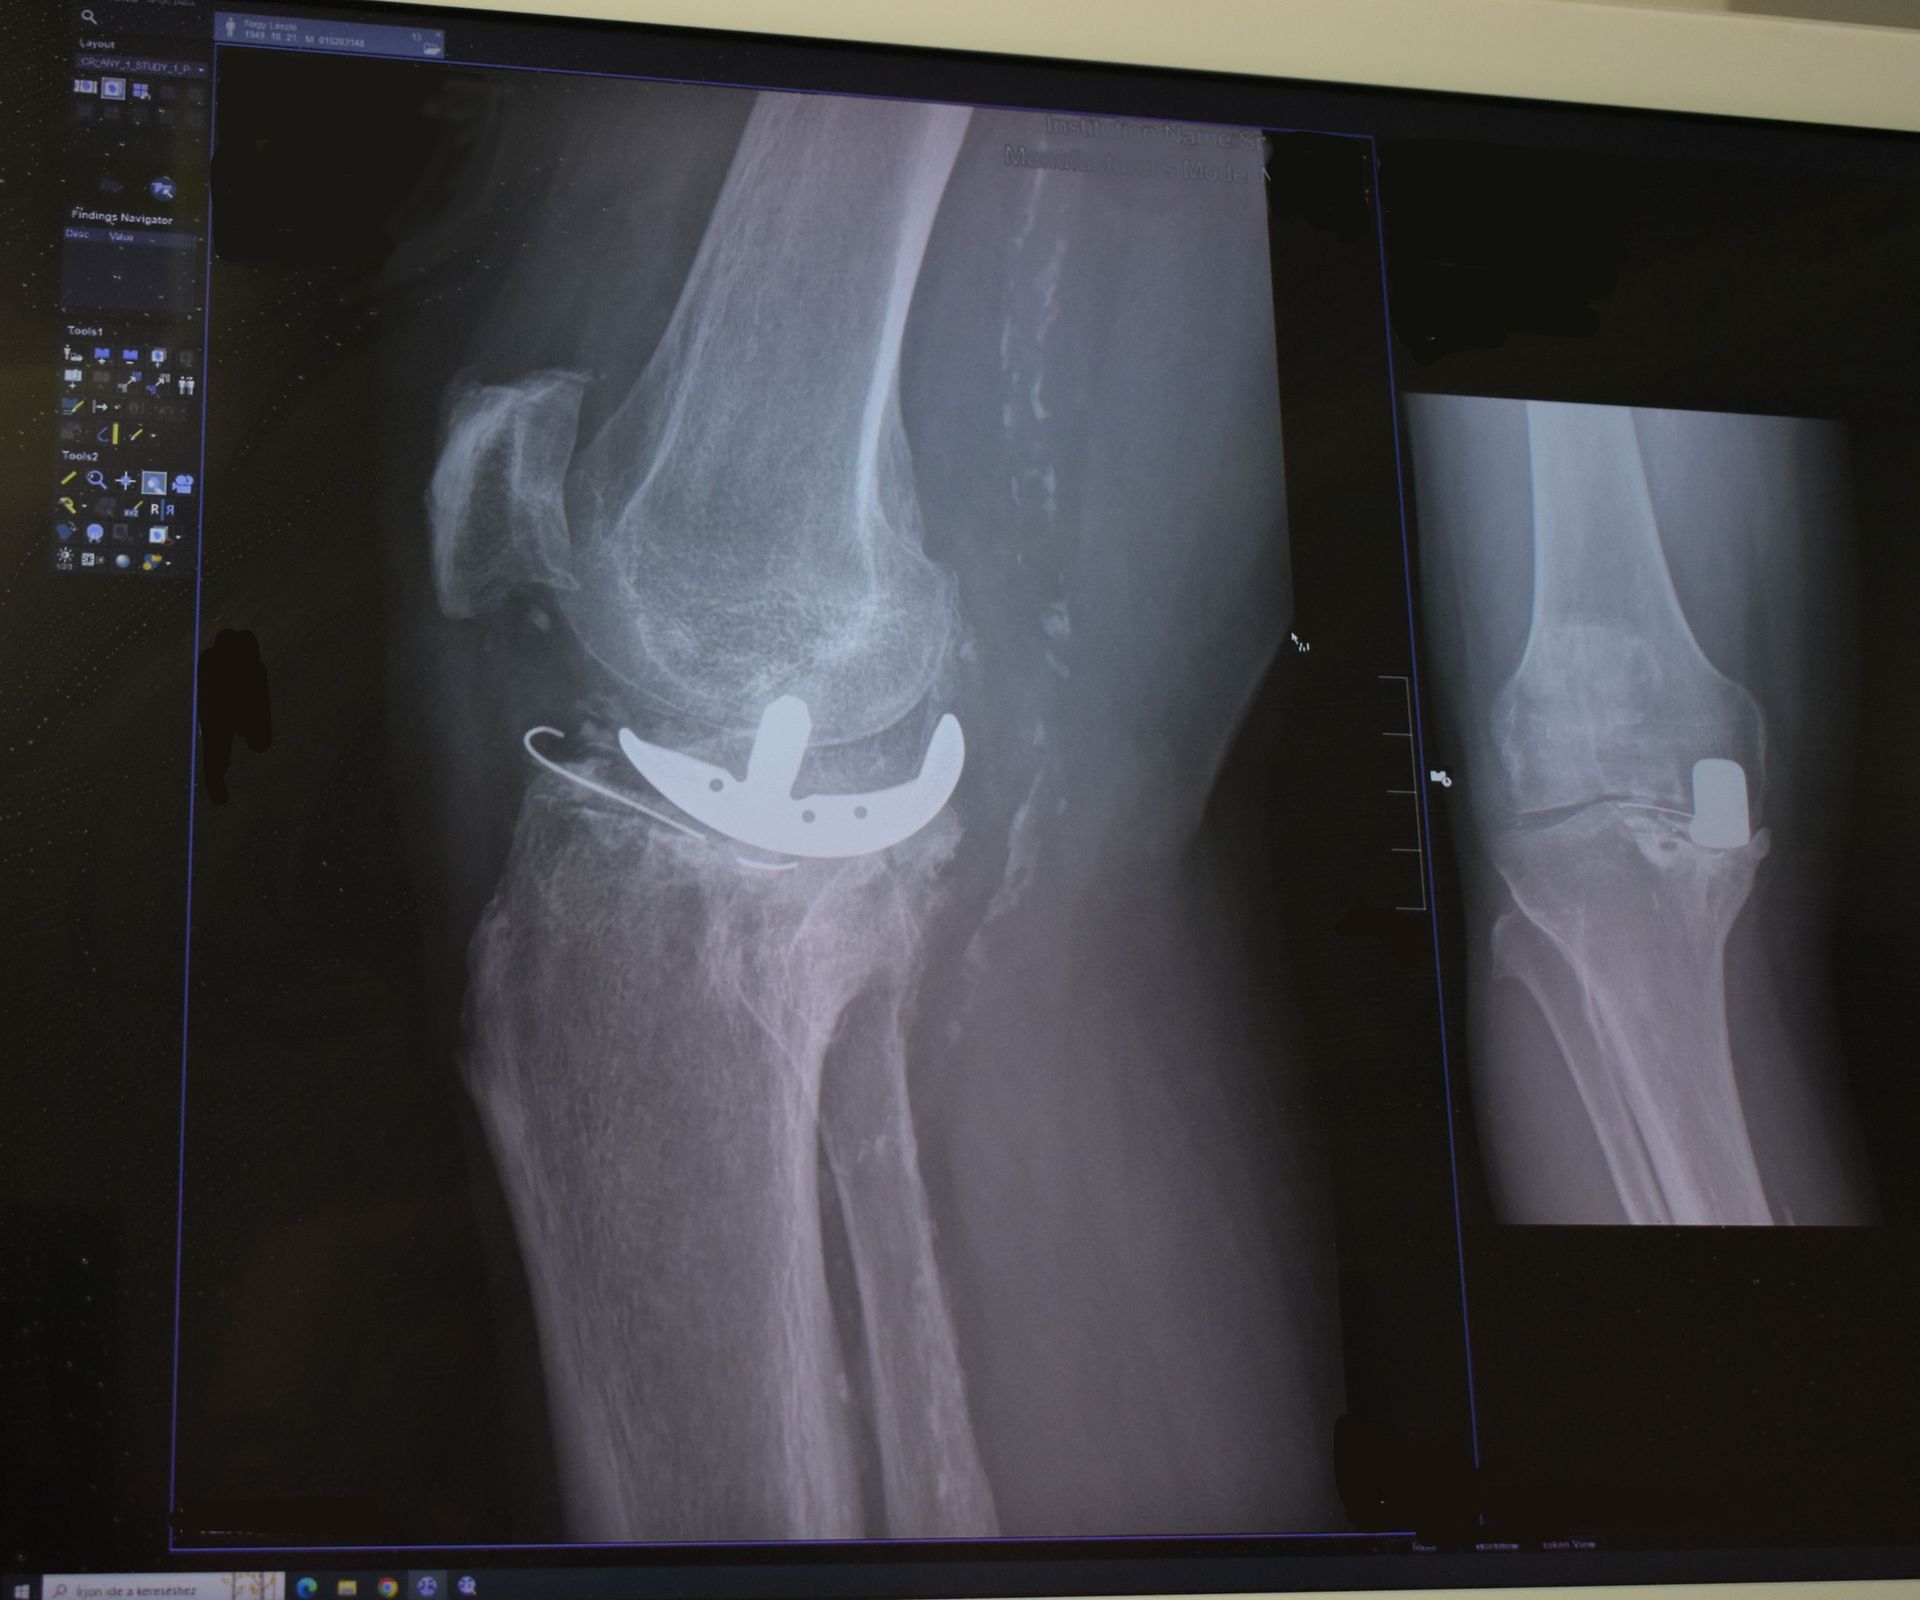 Az olimpiai bajnok jobb lábában lévő régi térdprotézis elhasználódott